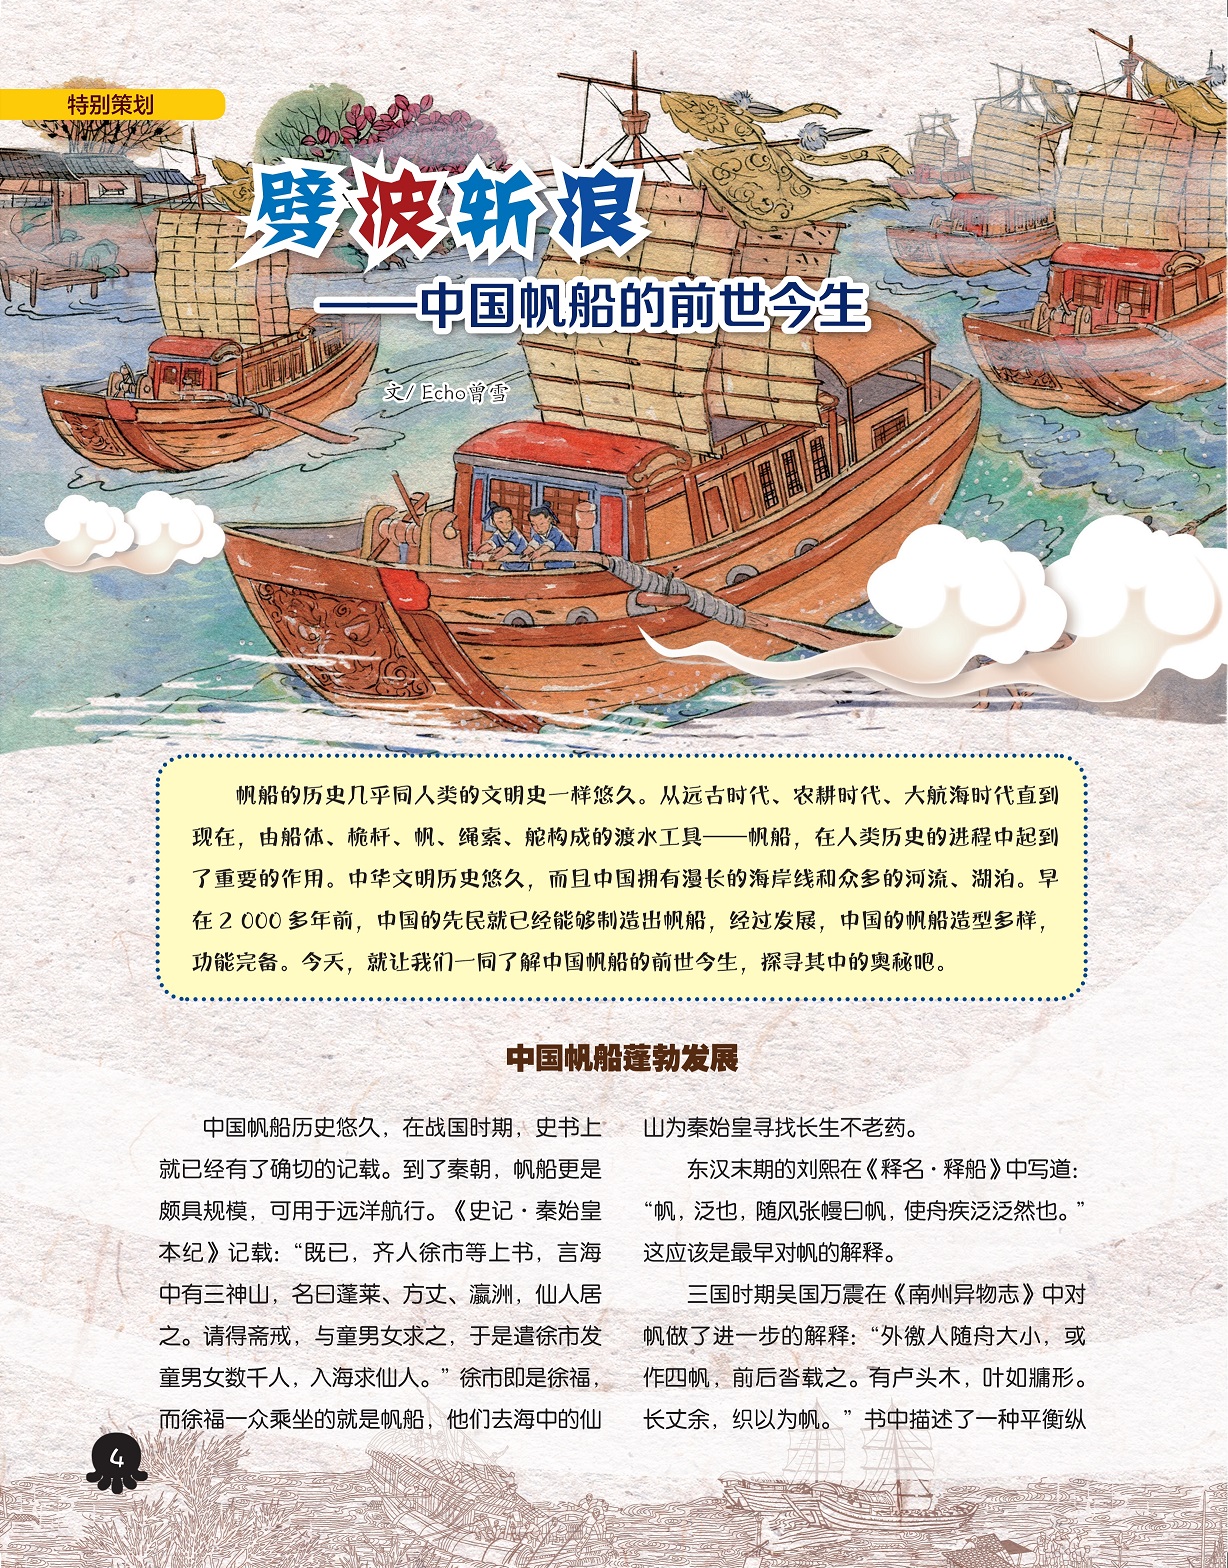 中国帆船蓬勃发展,中国帆船历史悠久